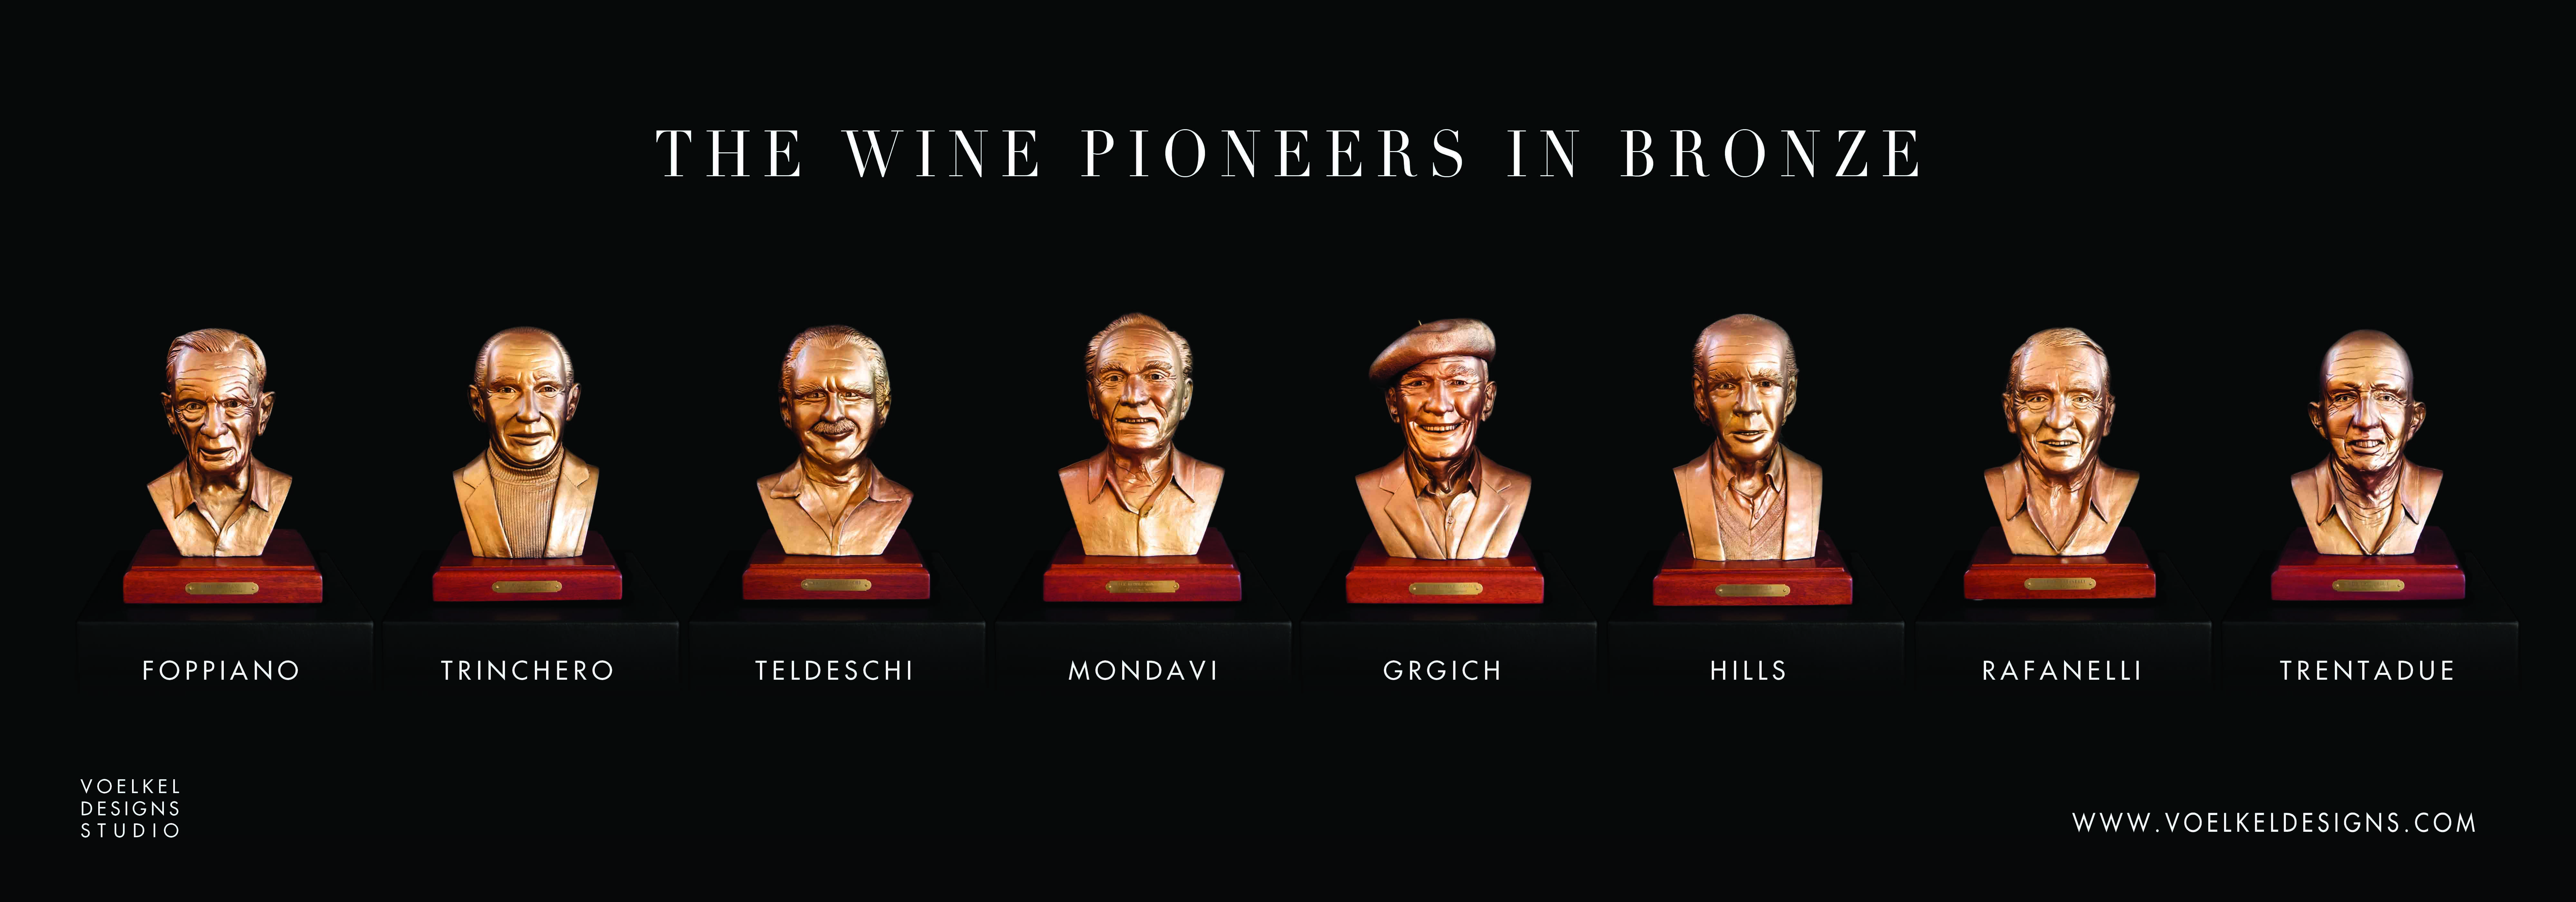 The Wine PIoneers in Bronze